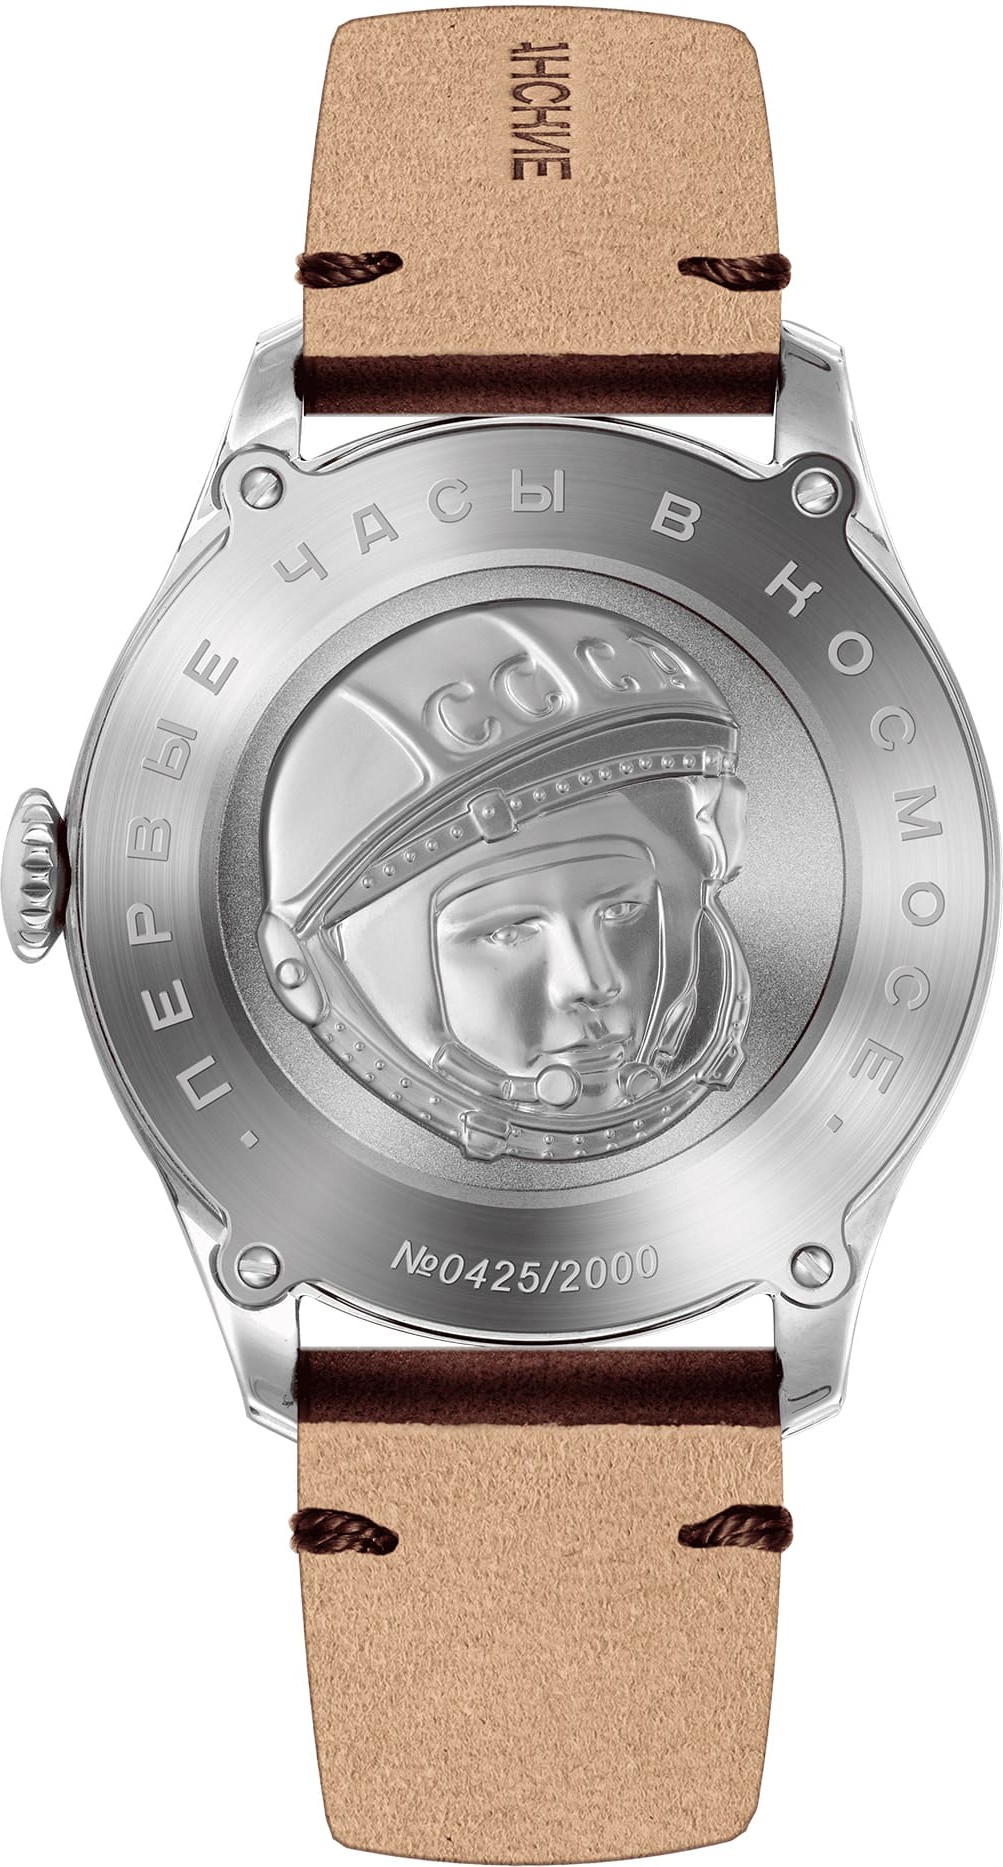  Sturmanskie Gagarin Vintage Retro 2609-3745130 